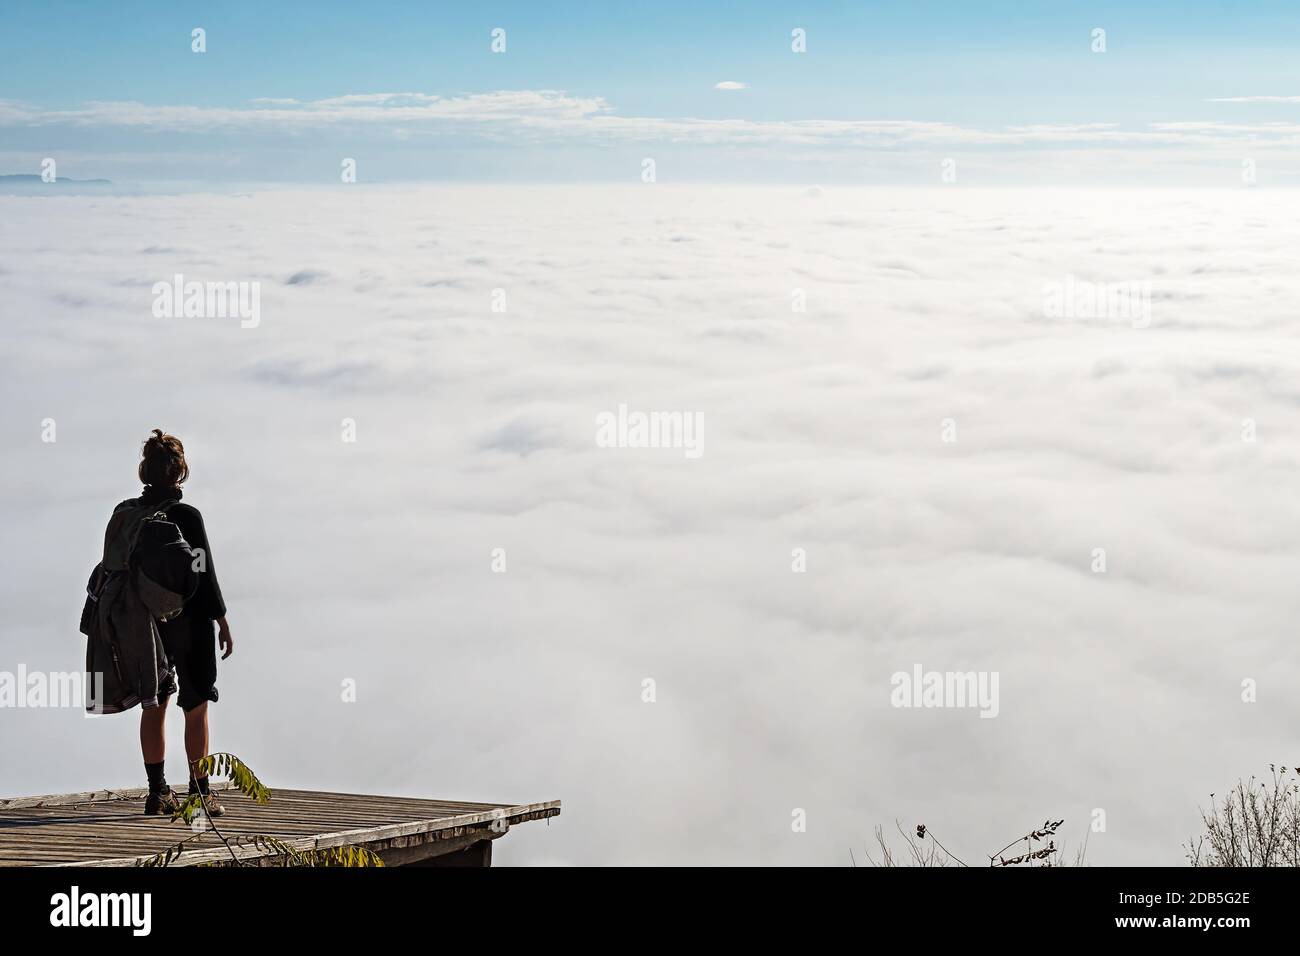 Frau, die auf einer hölzernen Plattform steht und den Blick auf das nebelbedeckte Tal unten genießt. Wandern, Leistung, Erwartung, Optimismus und Selbstreflexion Stockfoto